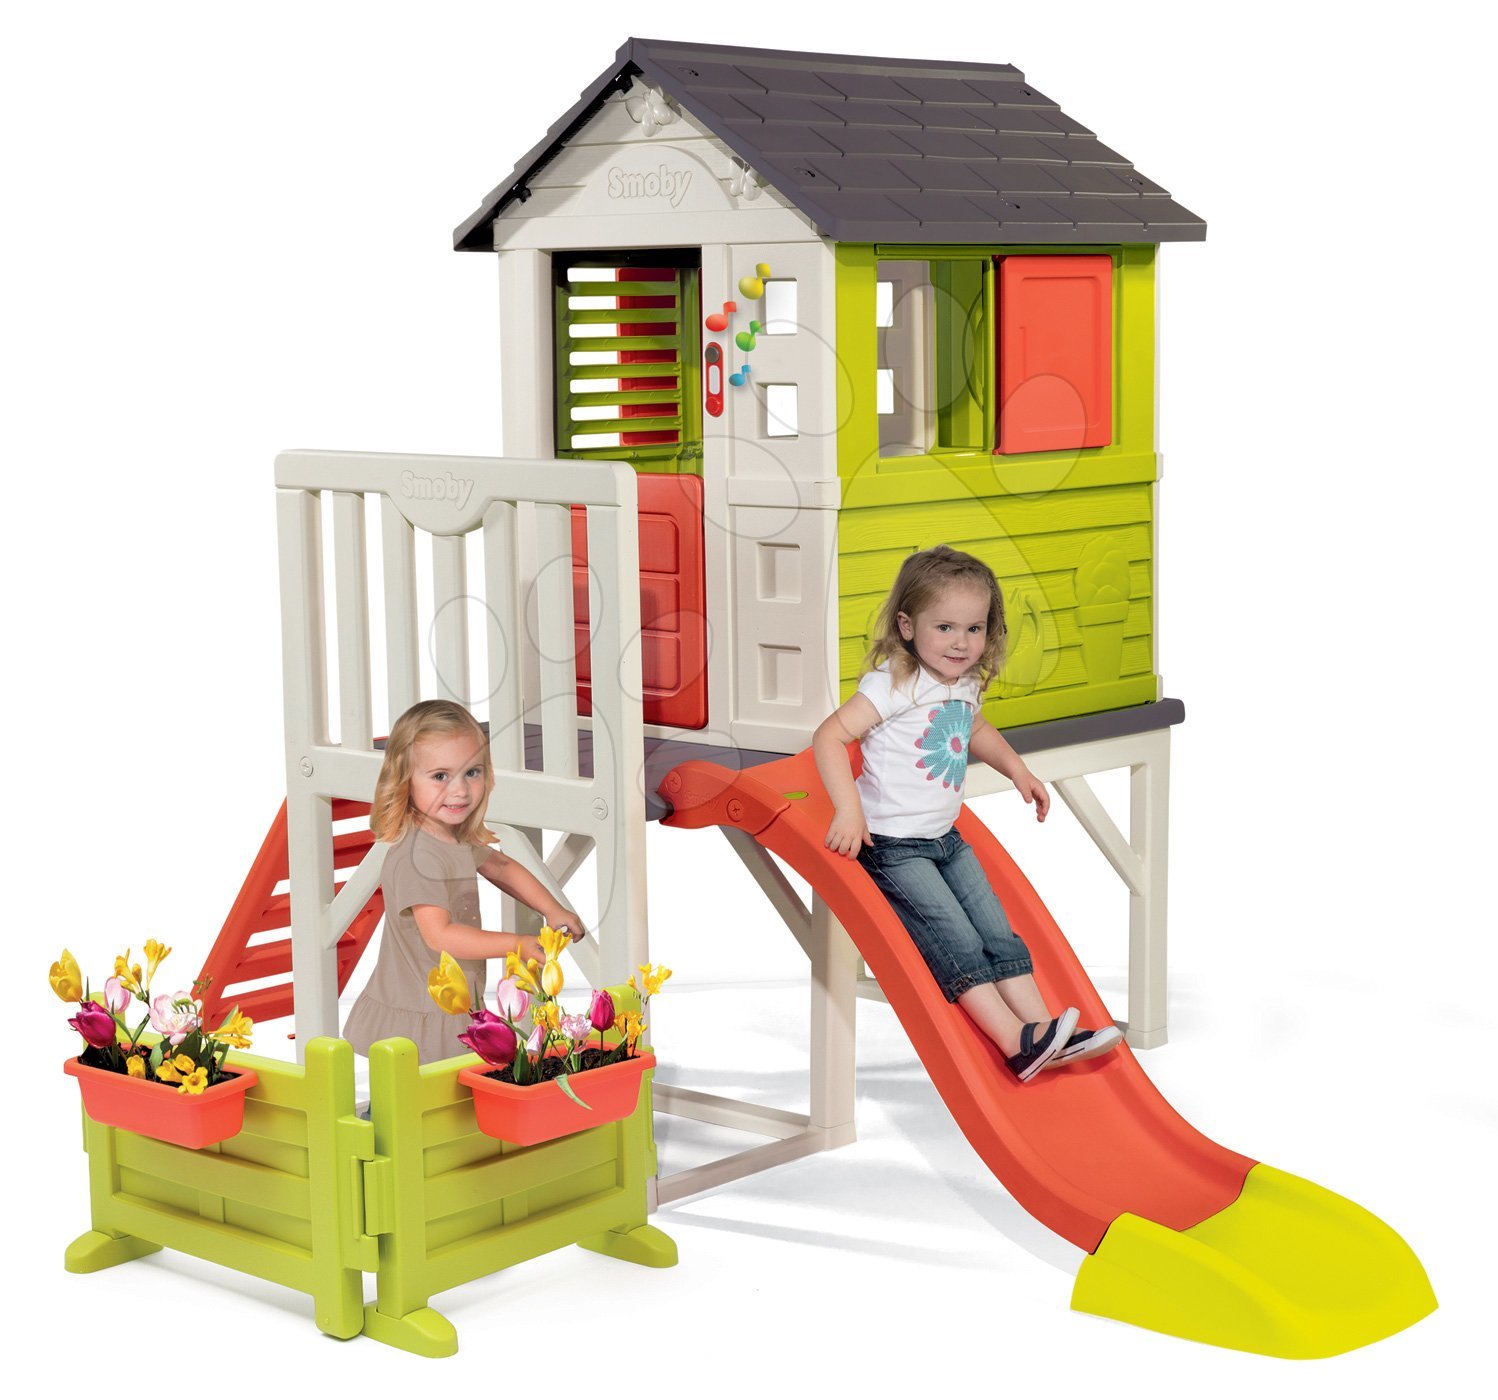 Kerti játszóházak gyerekeknek - Házikó pilléreken Pilings House Smoby 1,5 m csúszdával csengővel és előkerttel